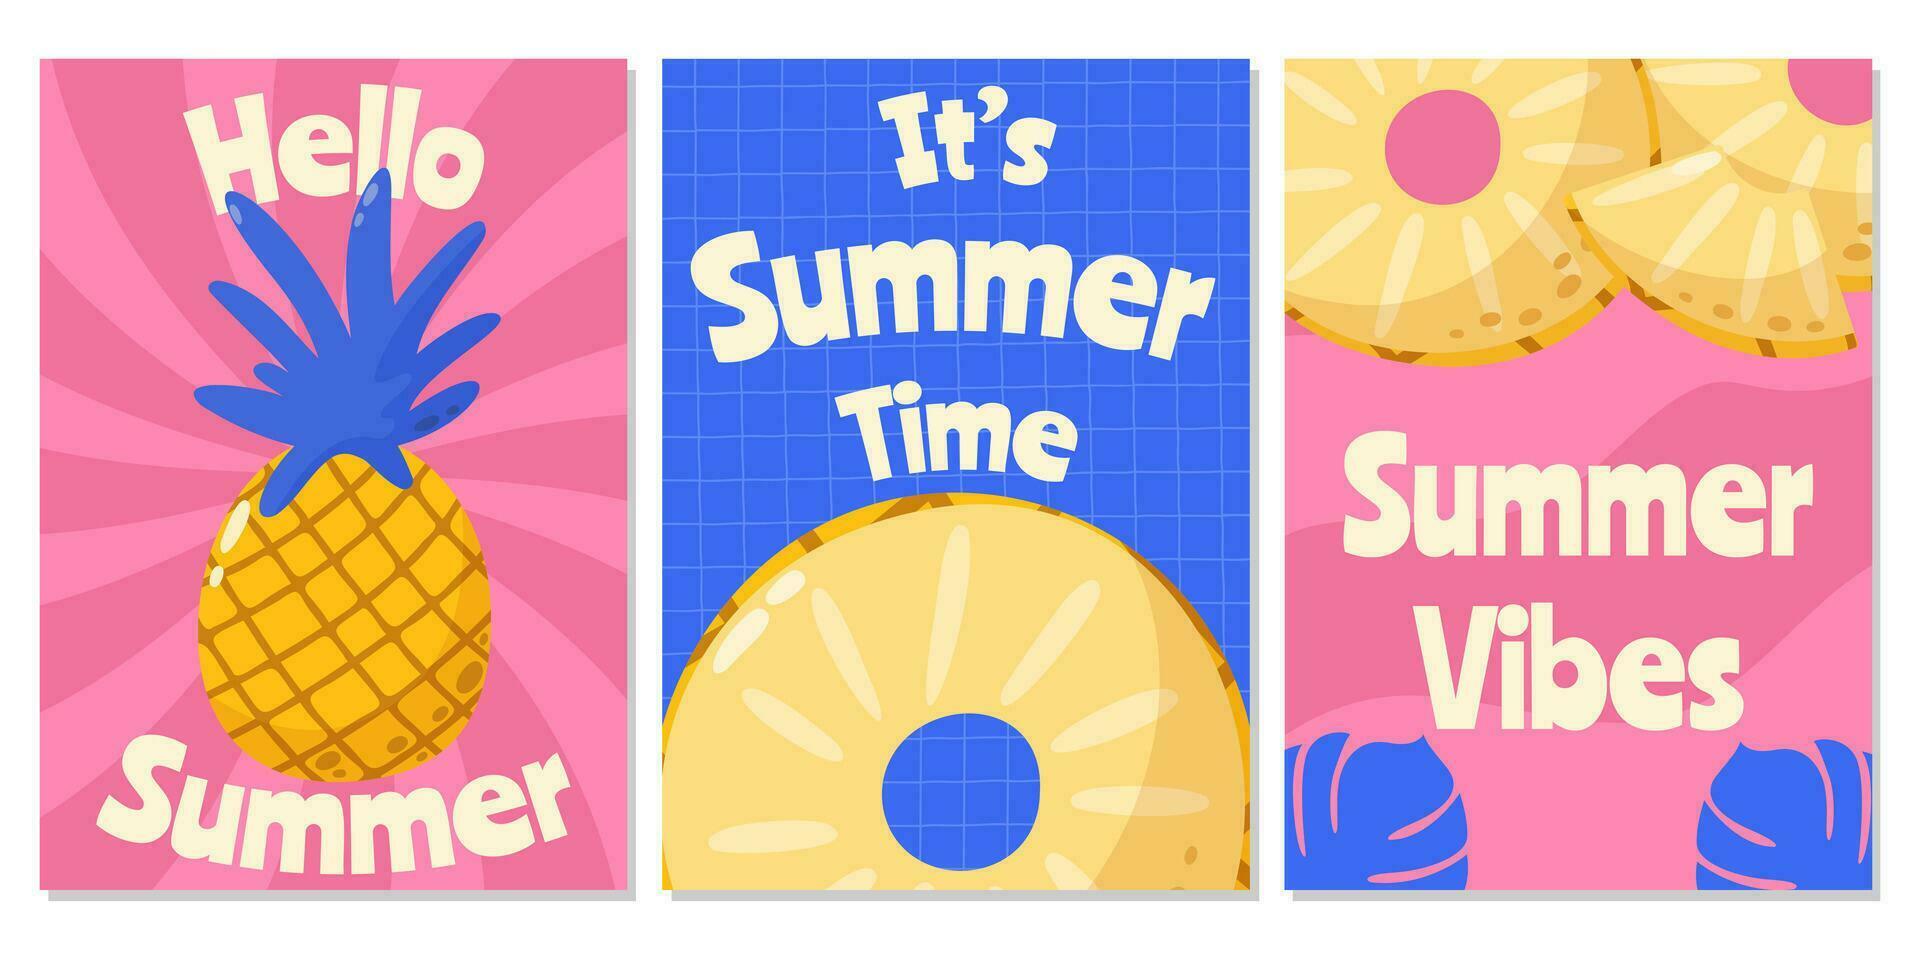 reeks van retro helder abstract posters met ananas. zomer modieus vector illustratie met seizoen tekst. voor banier, kaart, folder, web ontwerp, a4 formaat.